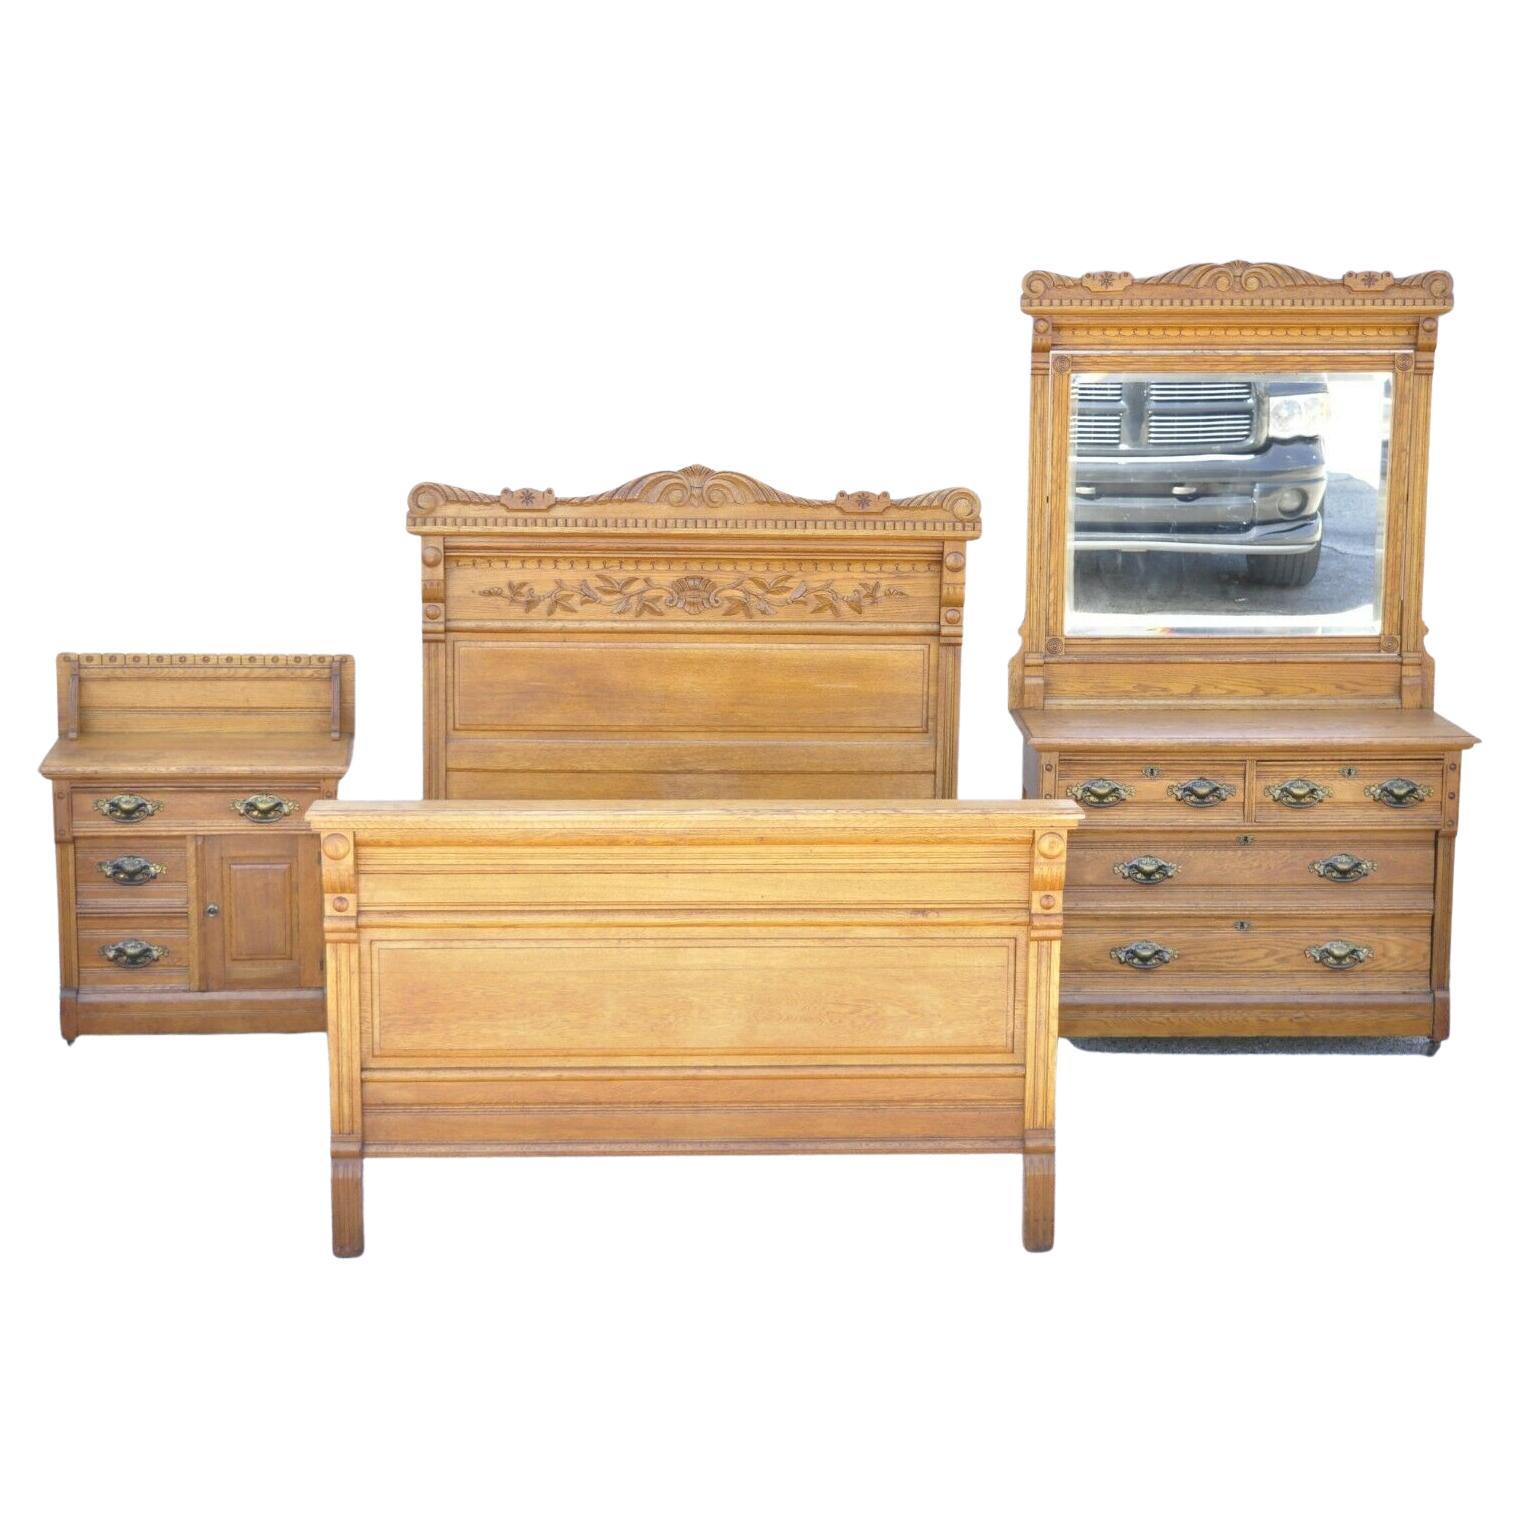 Antique Victorian Oak Bedroom Set Full Size Bed Washstand Dresser, 3 Piece Set For Sale